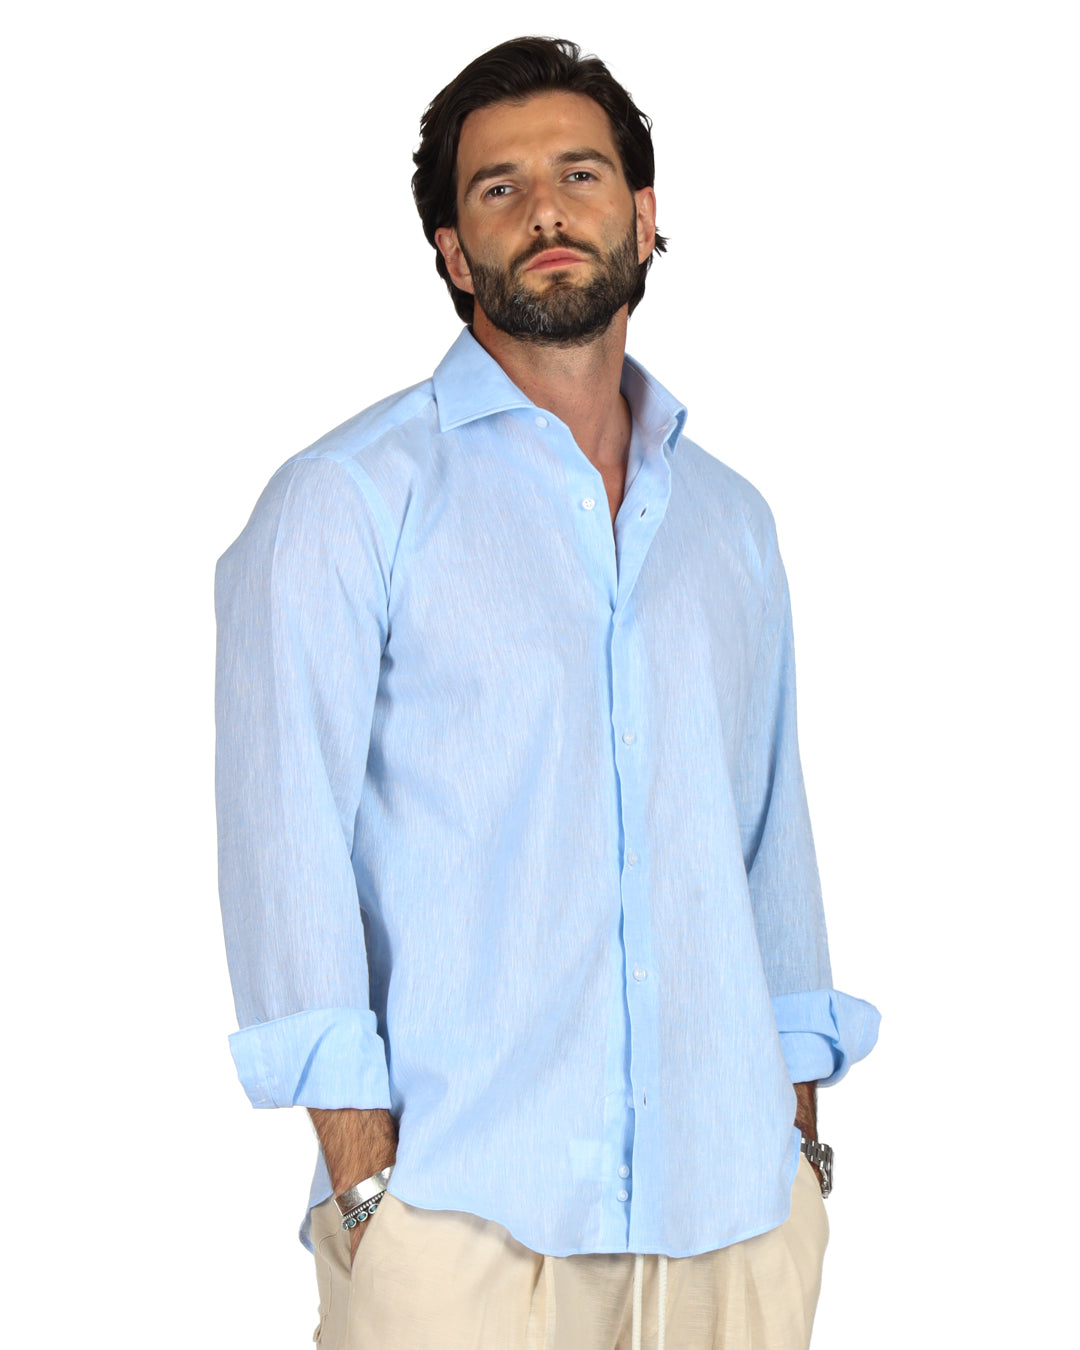 Praiano - Classic light blue linen shirt